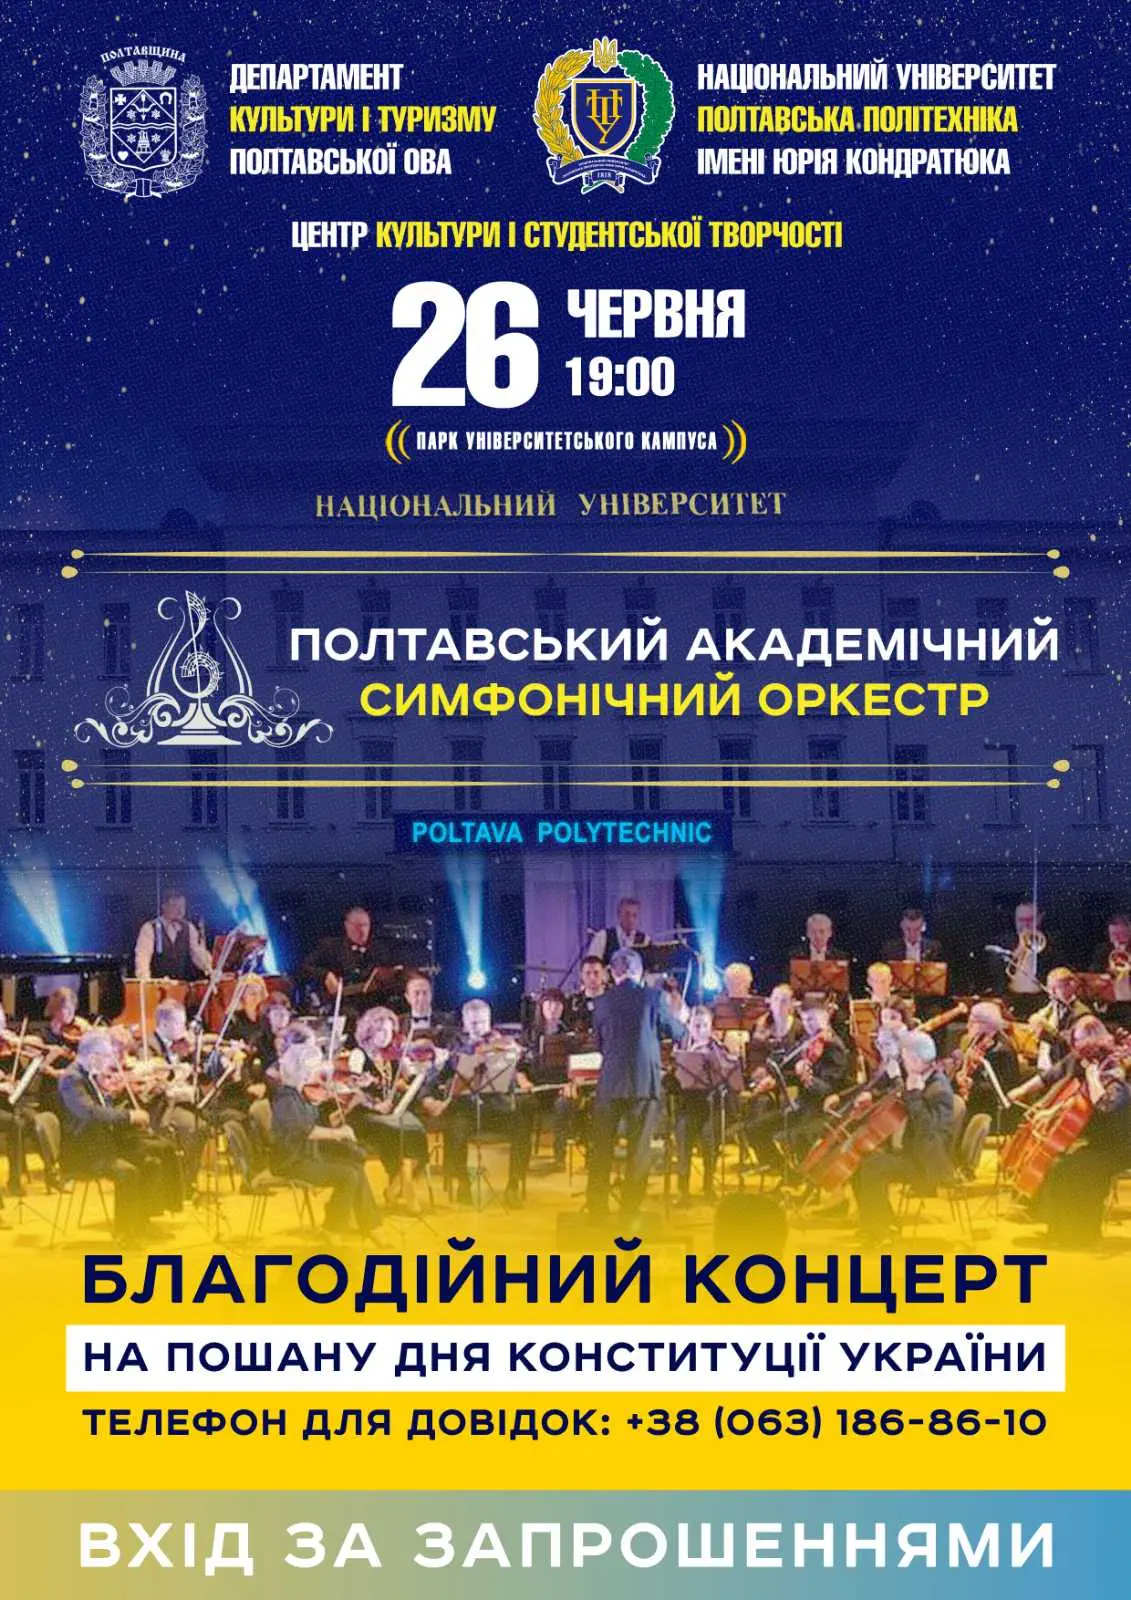 Полтавський академічний симфонічний оркестр виступить в університеті з благодійним концерт...